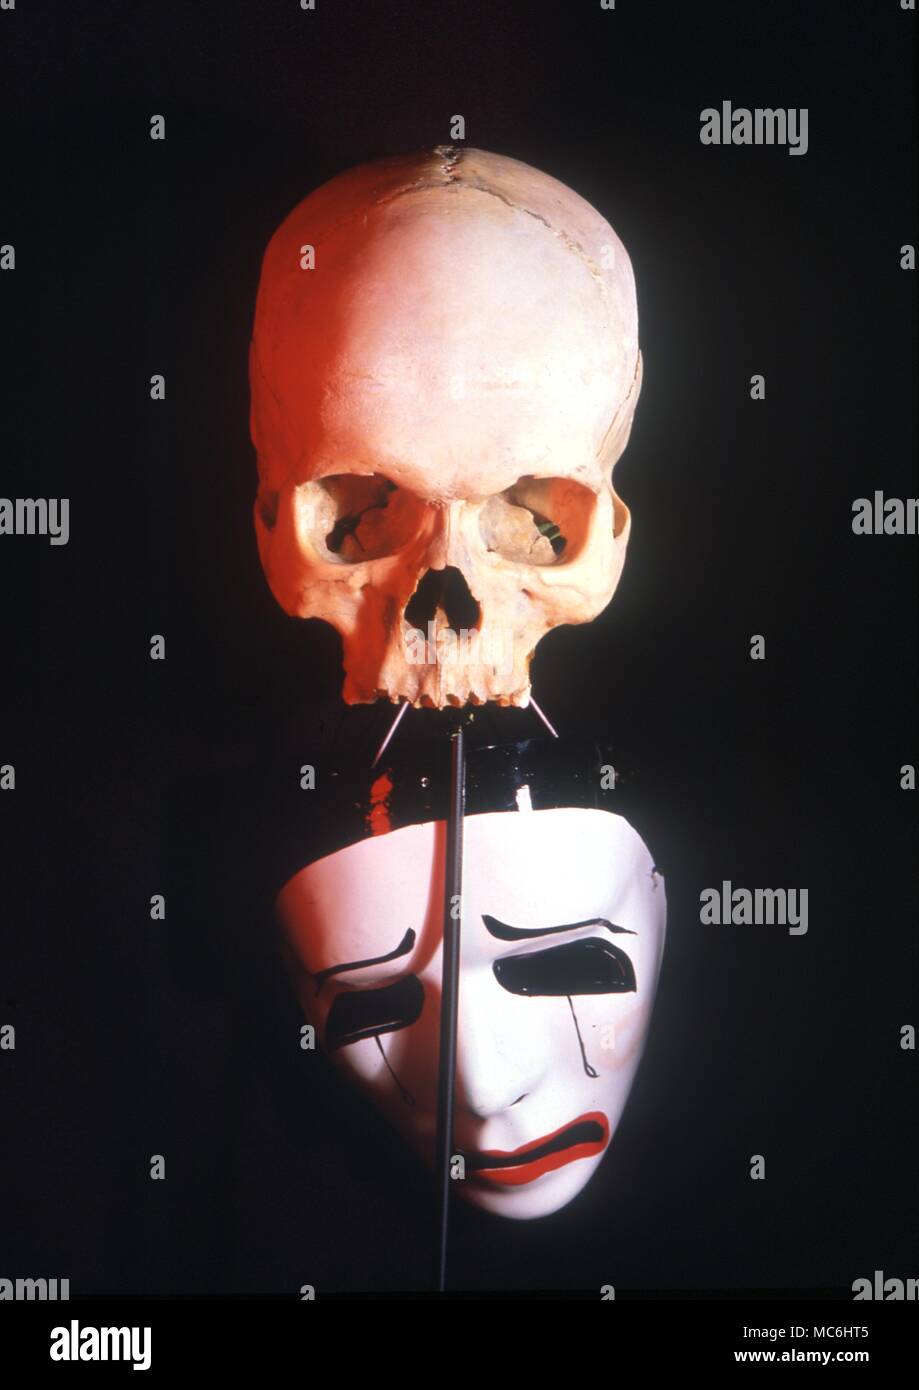 Stage Magic - Floating skull rivelato. Foto progettato per mostrare la barra nera che sostiene il cranio nel suo armadio. Normalmente invisibile durante l'agire è visto qui di fronte a una maschera, con illuminazione aggiuntiva. Foto Stock